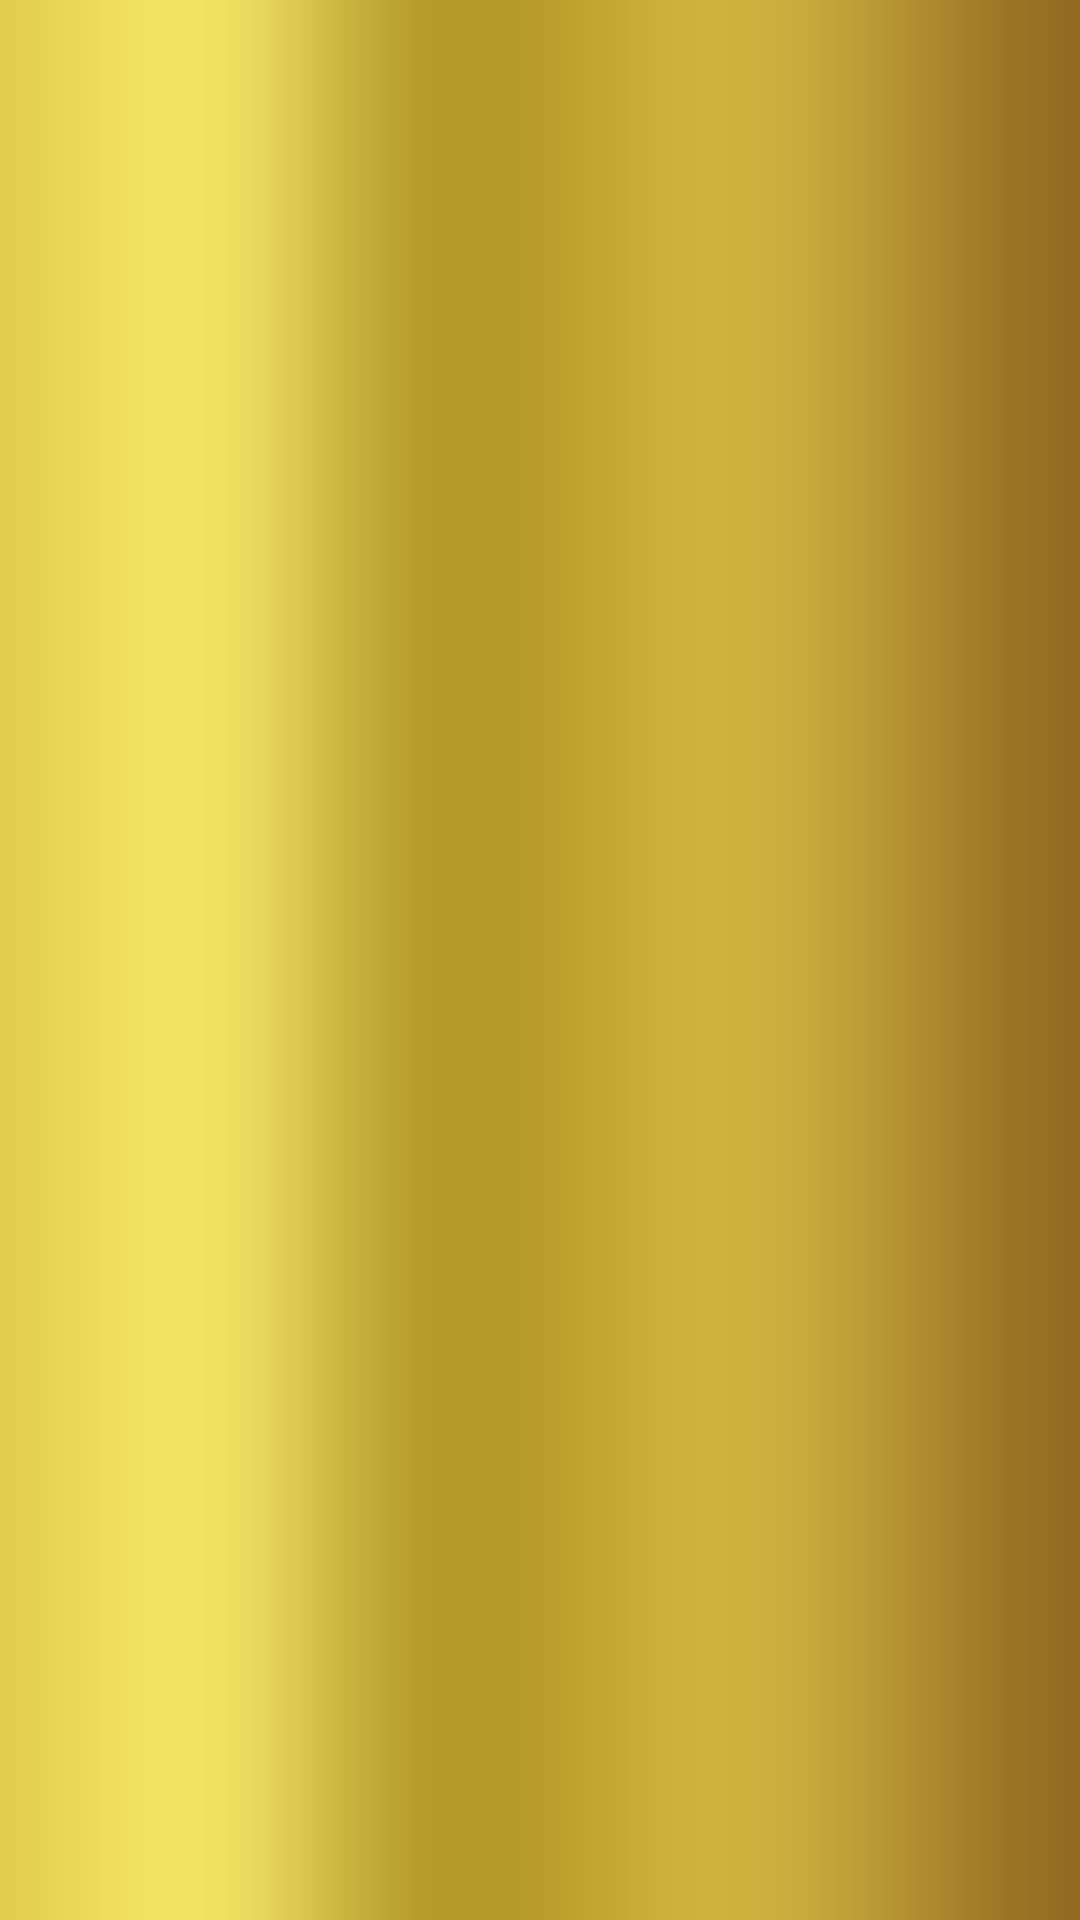 1080x1920 Golden Gold 1080 x 1920 FHD Wallpaper Golden Gold 1080 x 1920 FHD Wallpaper